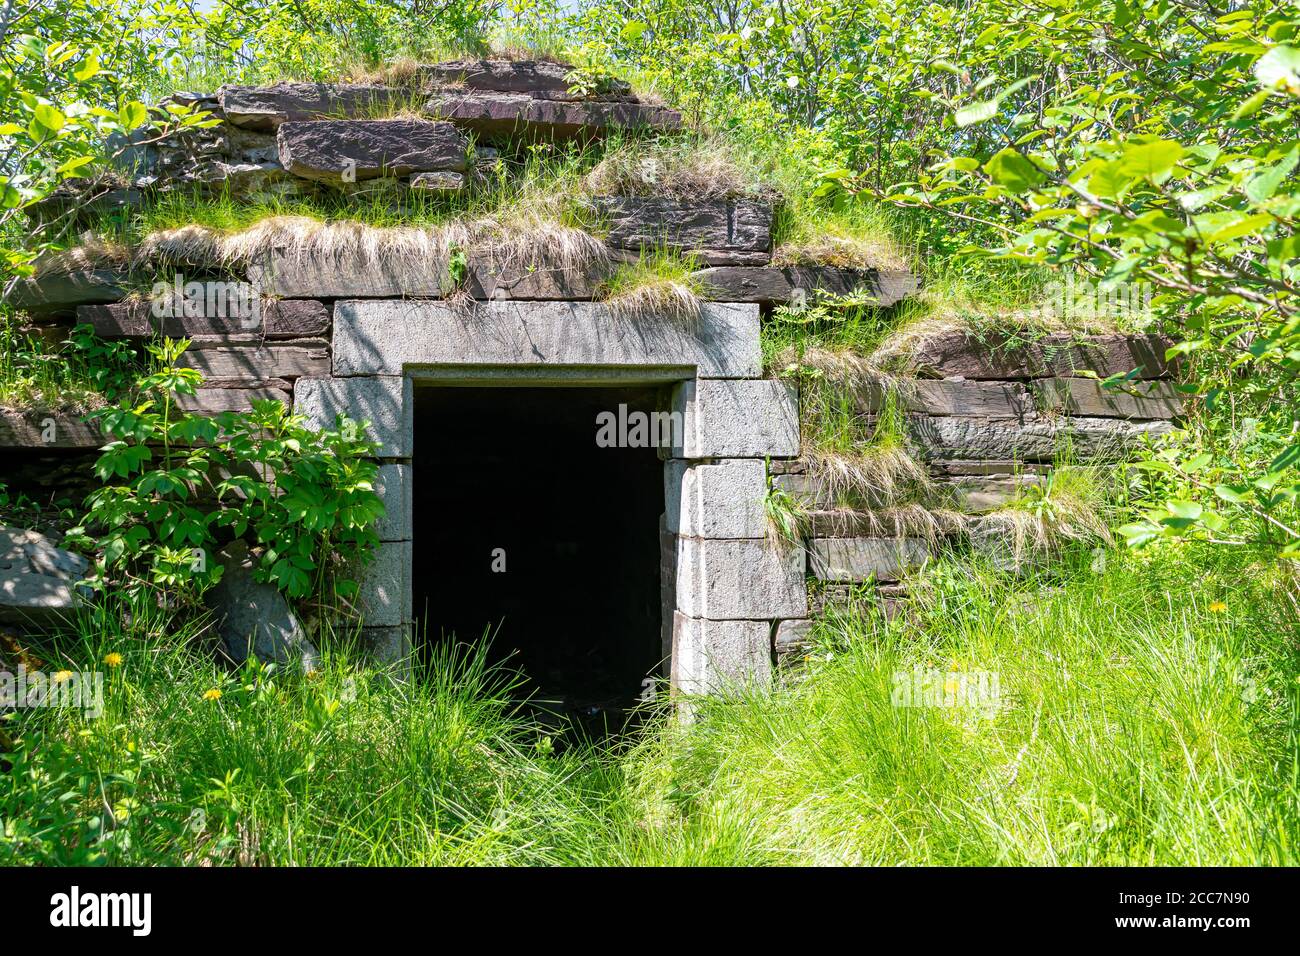 L'entrée d'un vieux magazine de munitions. Il est fait de pierre, et se trouve sur le côté d'une colline recouverte d'herbe et d'arbustes. Construit dans les années 1800. Banque D'Images